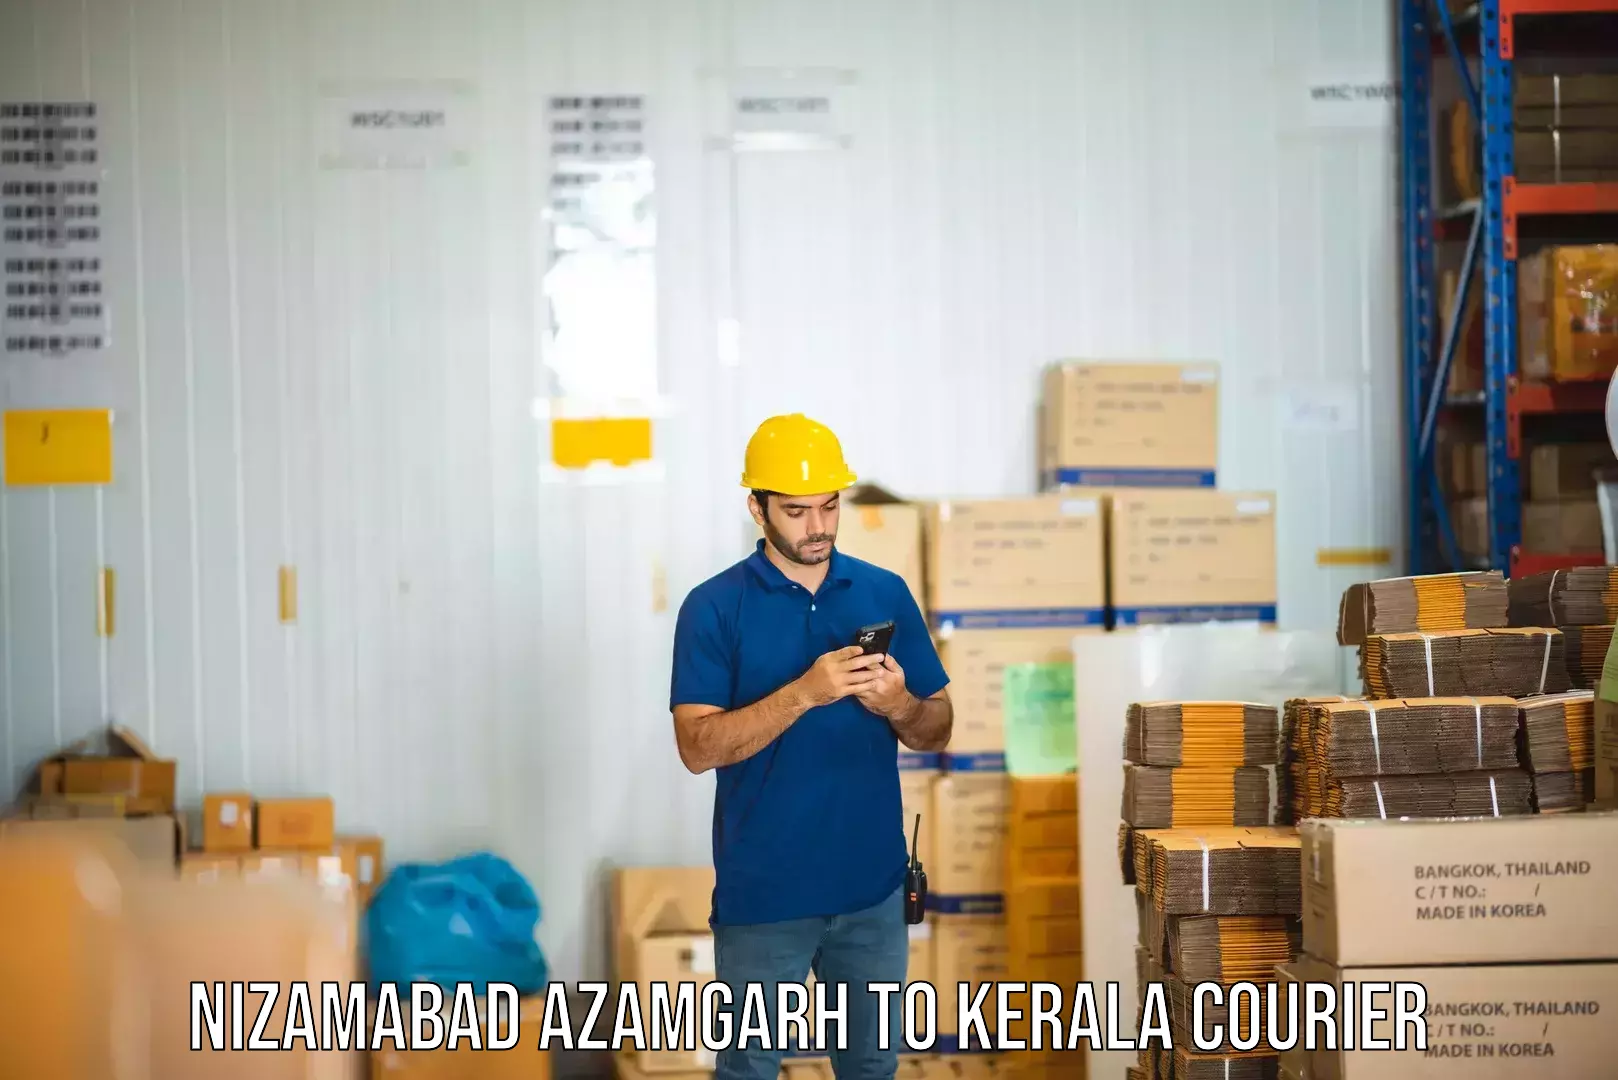 Subscription-based courier Nizamabad Azamgarh to Kerala